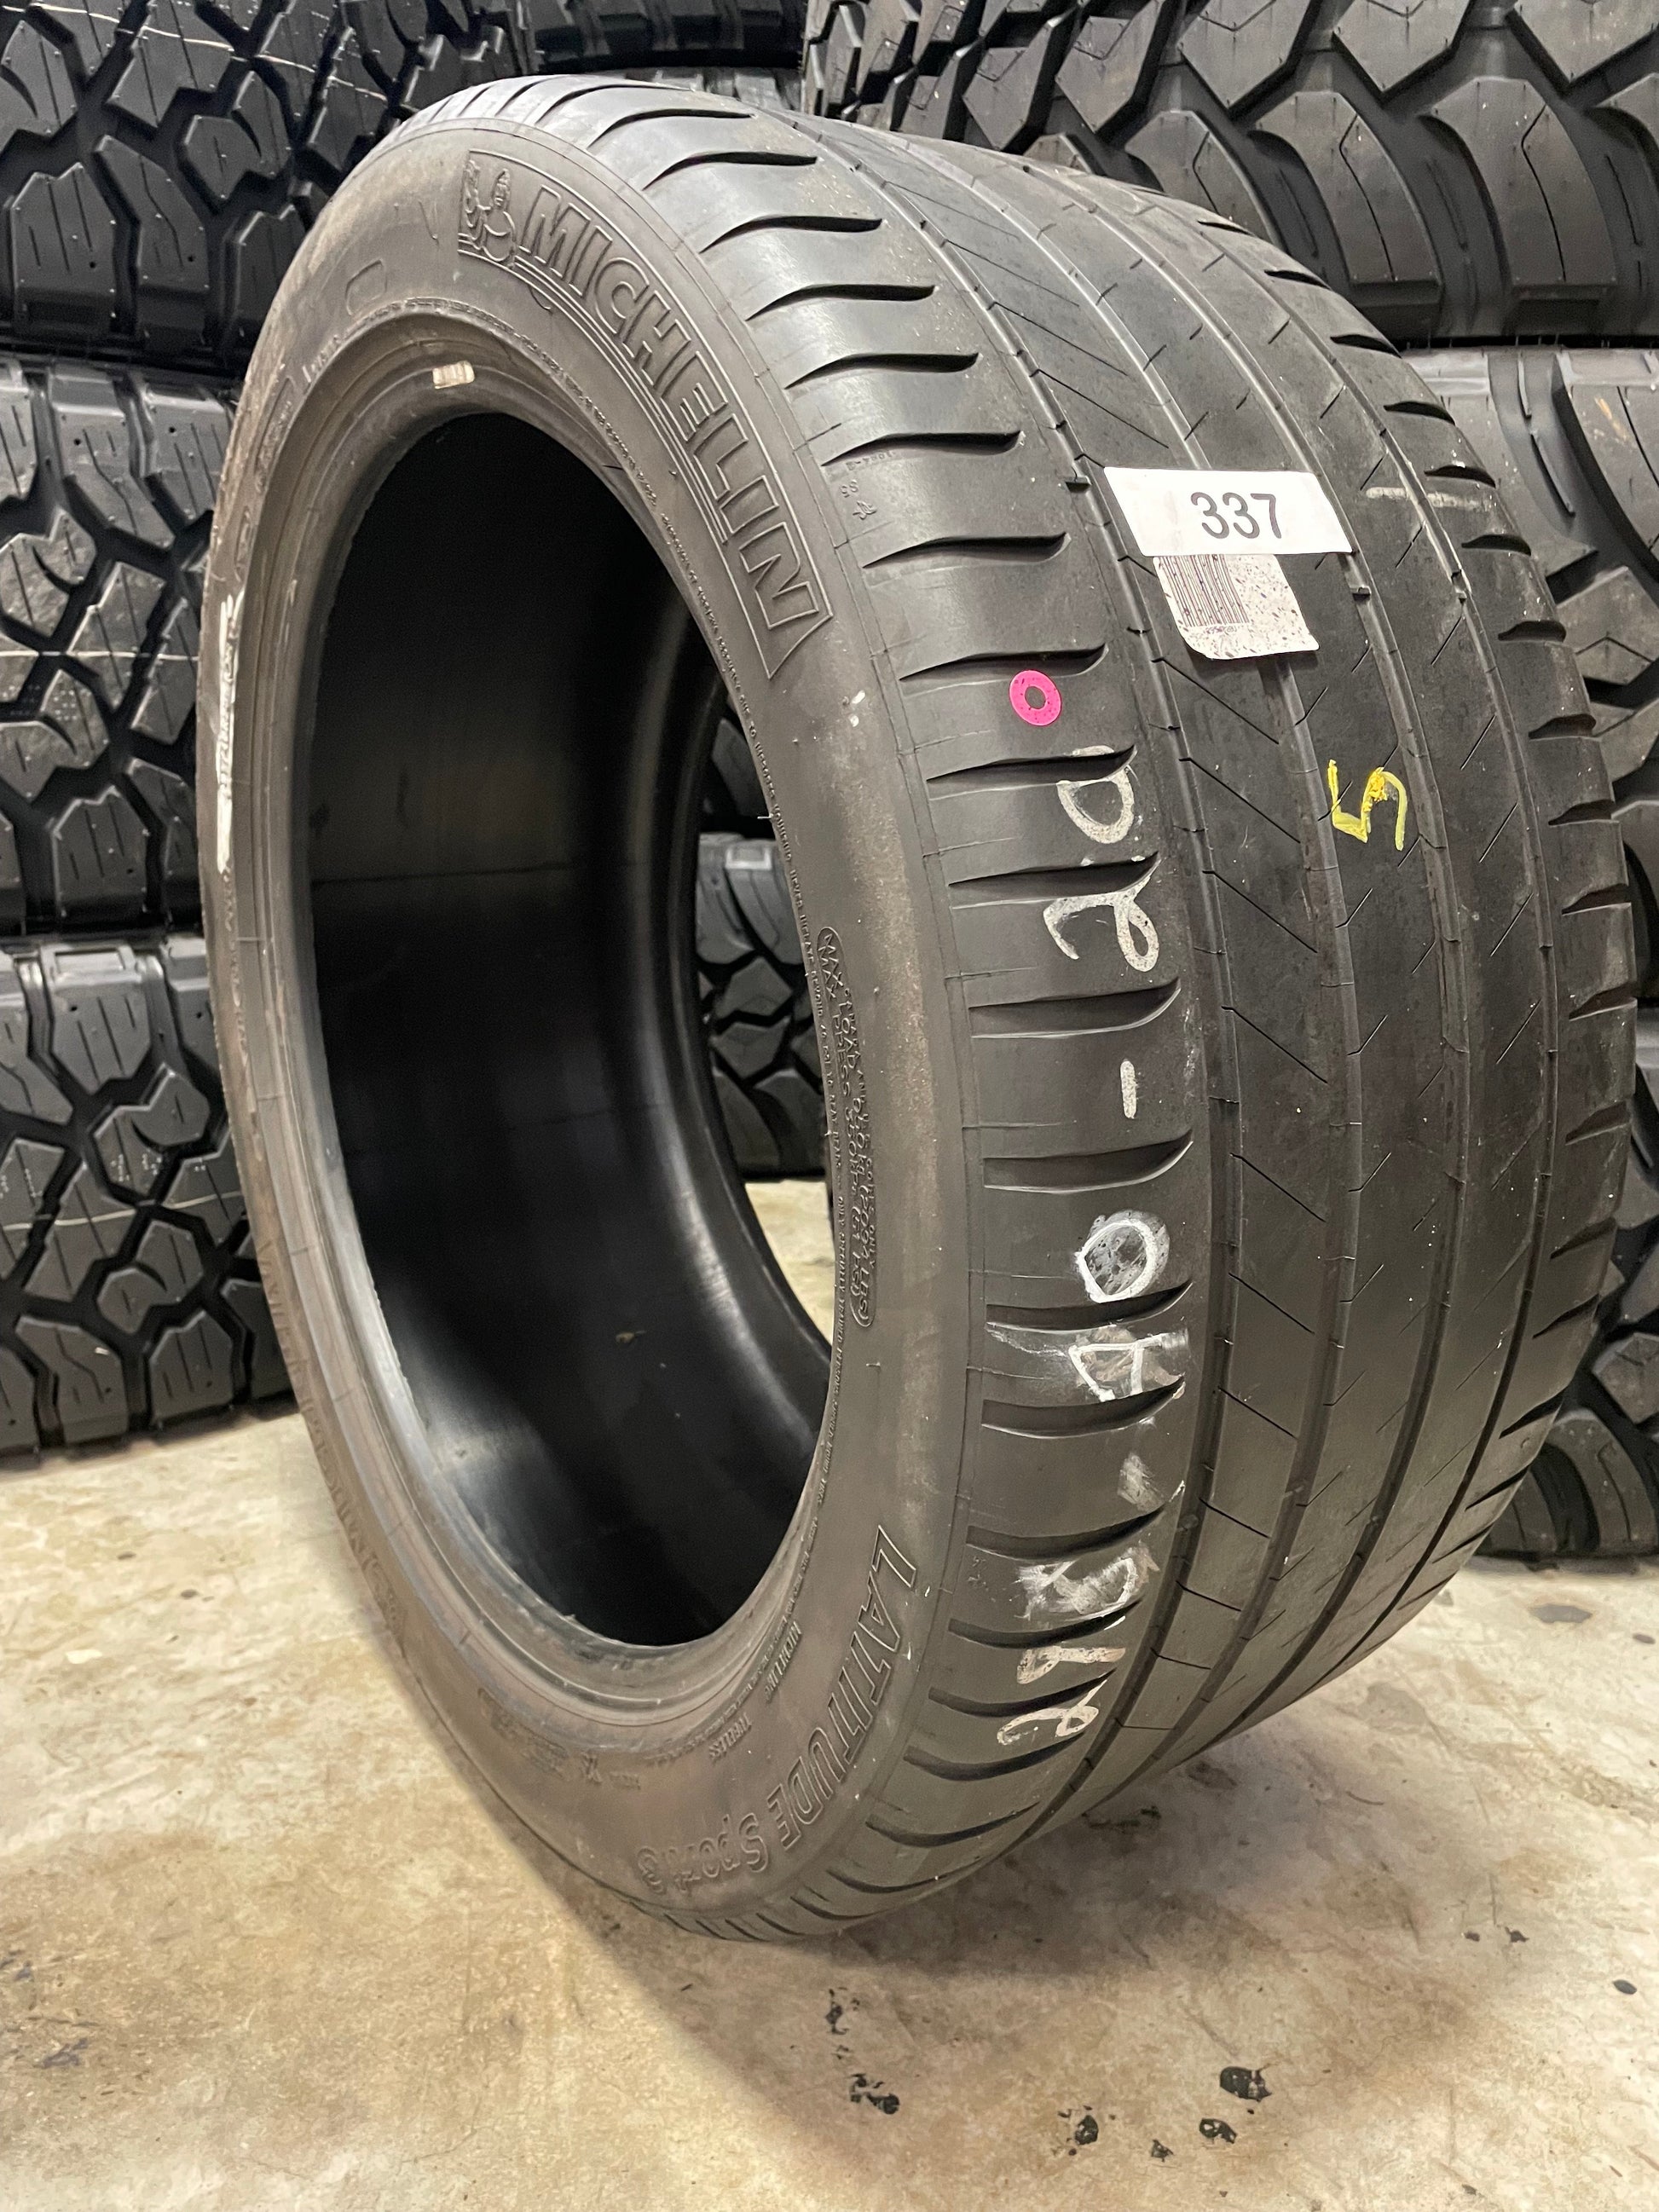 SINGLE 295/40R20 Michelin Latitude Sport 3 106 Y XL - Used Tires